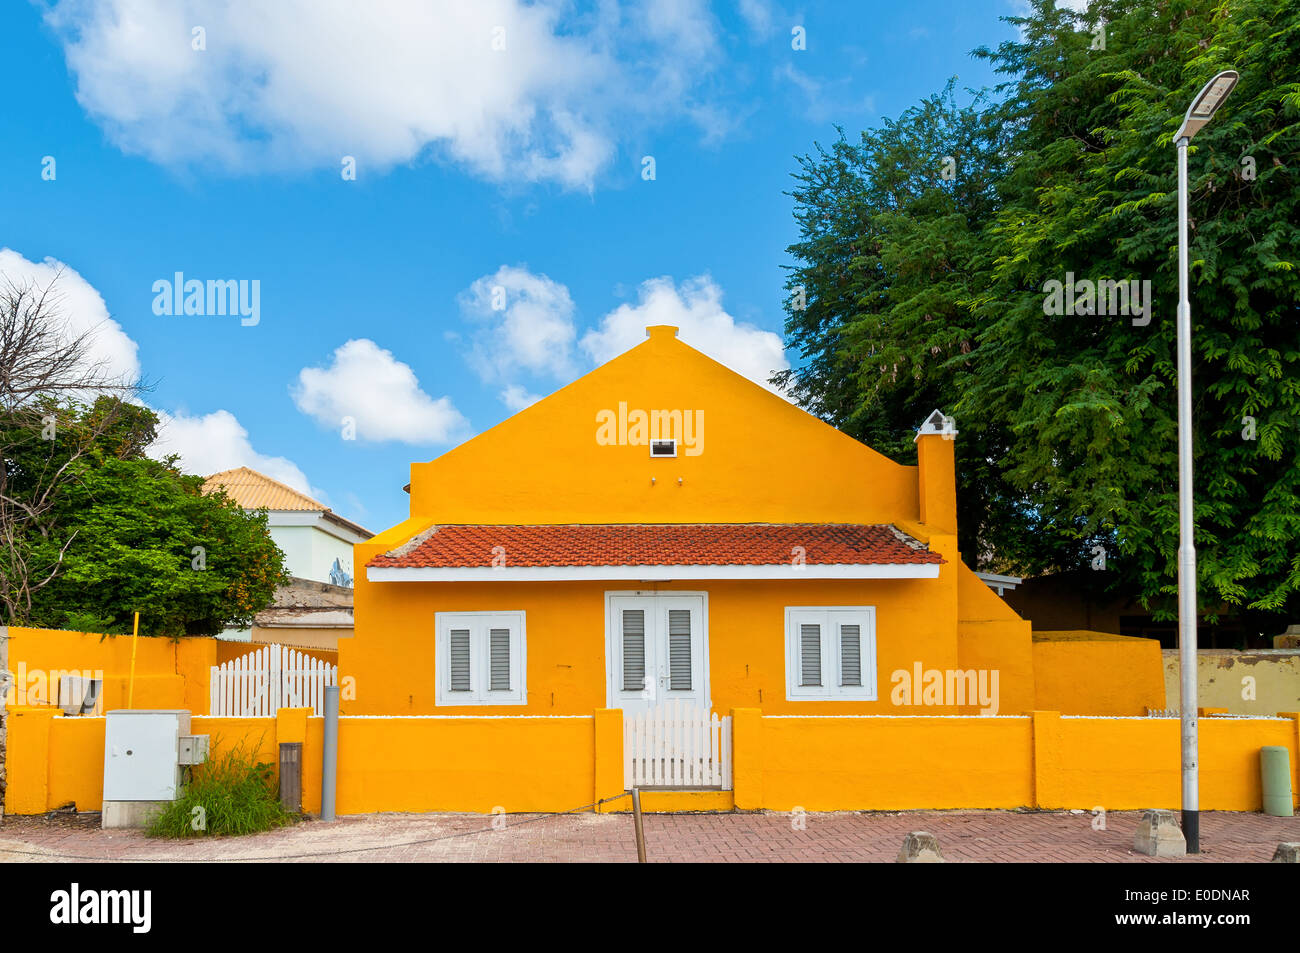 Queste case a Bonaire sono una combinazione di colori dei caraibi con l'architettura olandese. Foto Stock